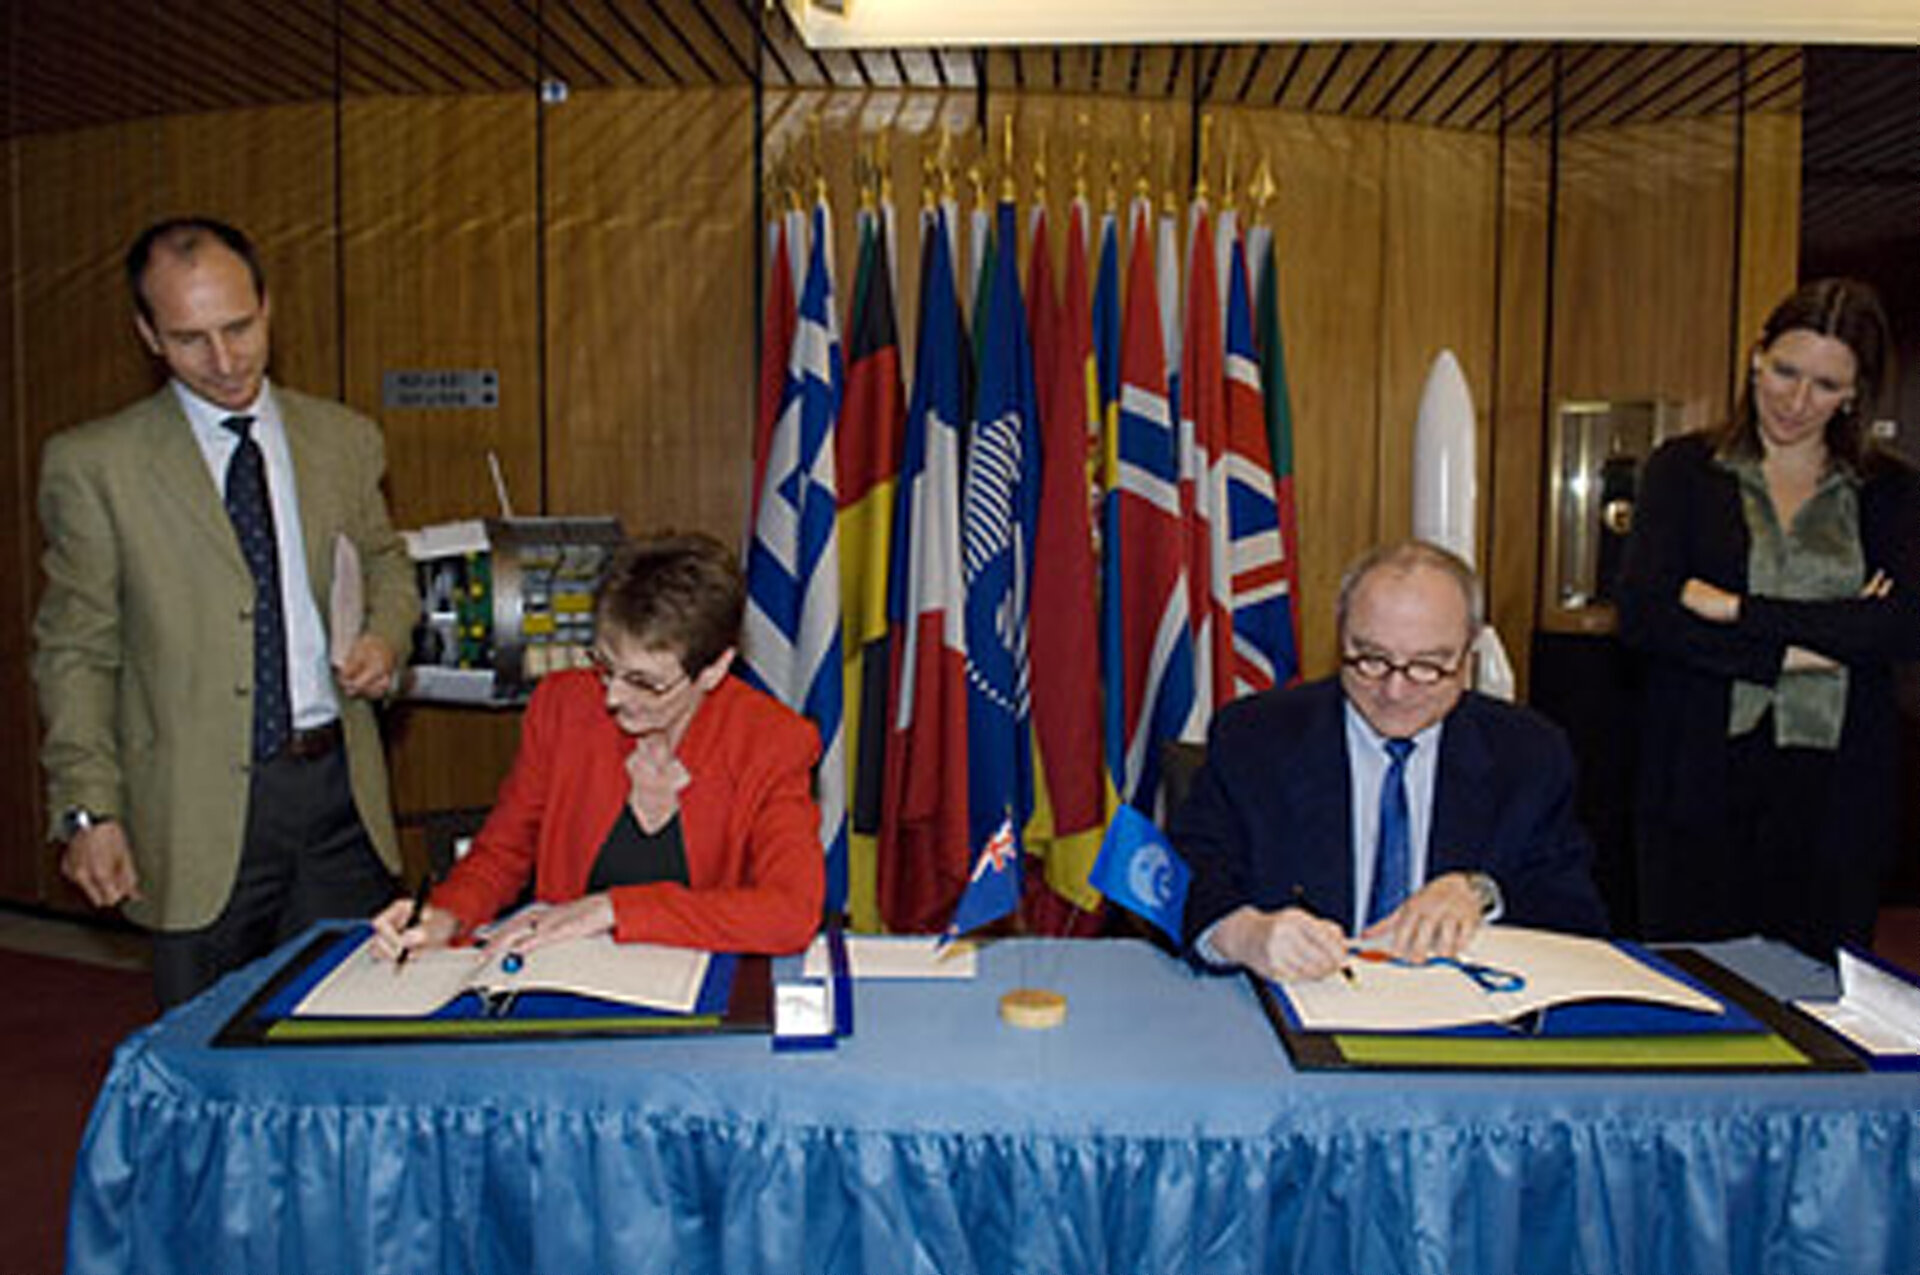 ESA DG Jean-Jacques Dordain and Her Excellency Ms Sarah Dennis sign the arrangement